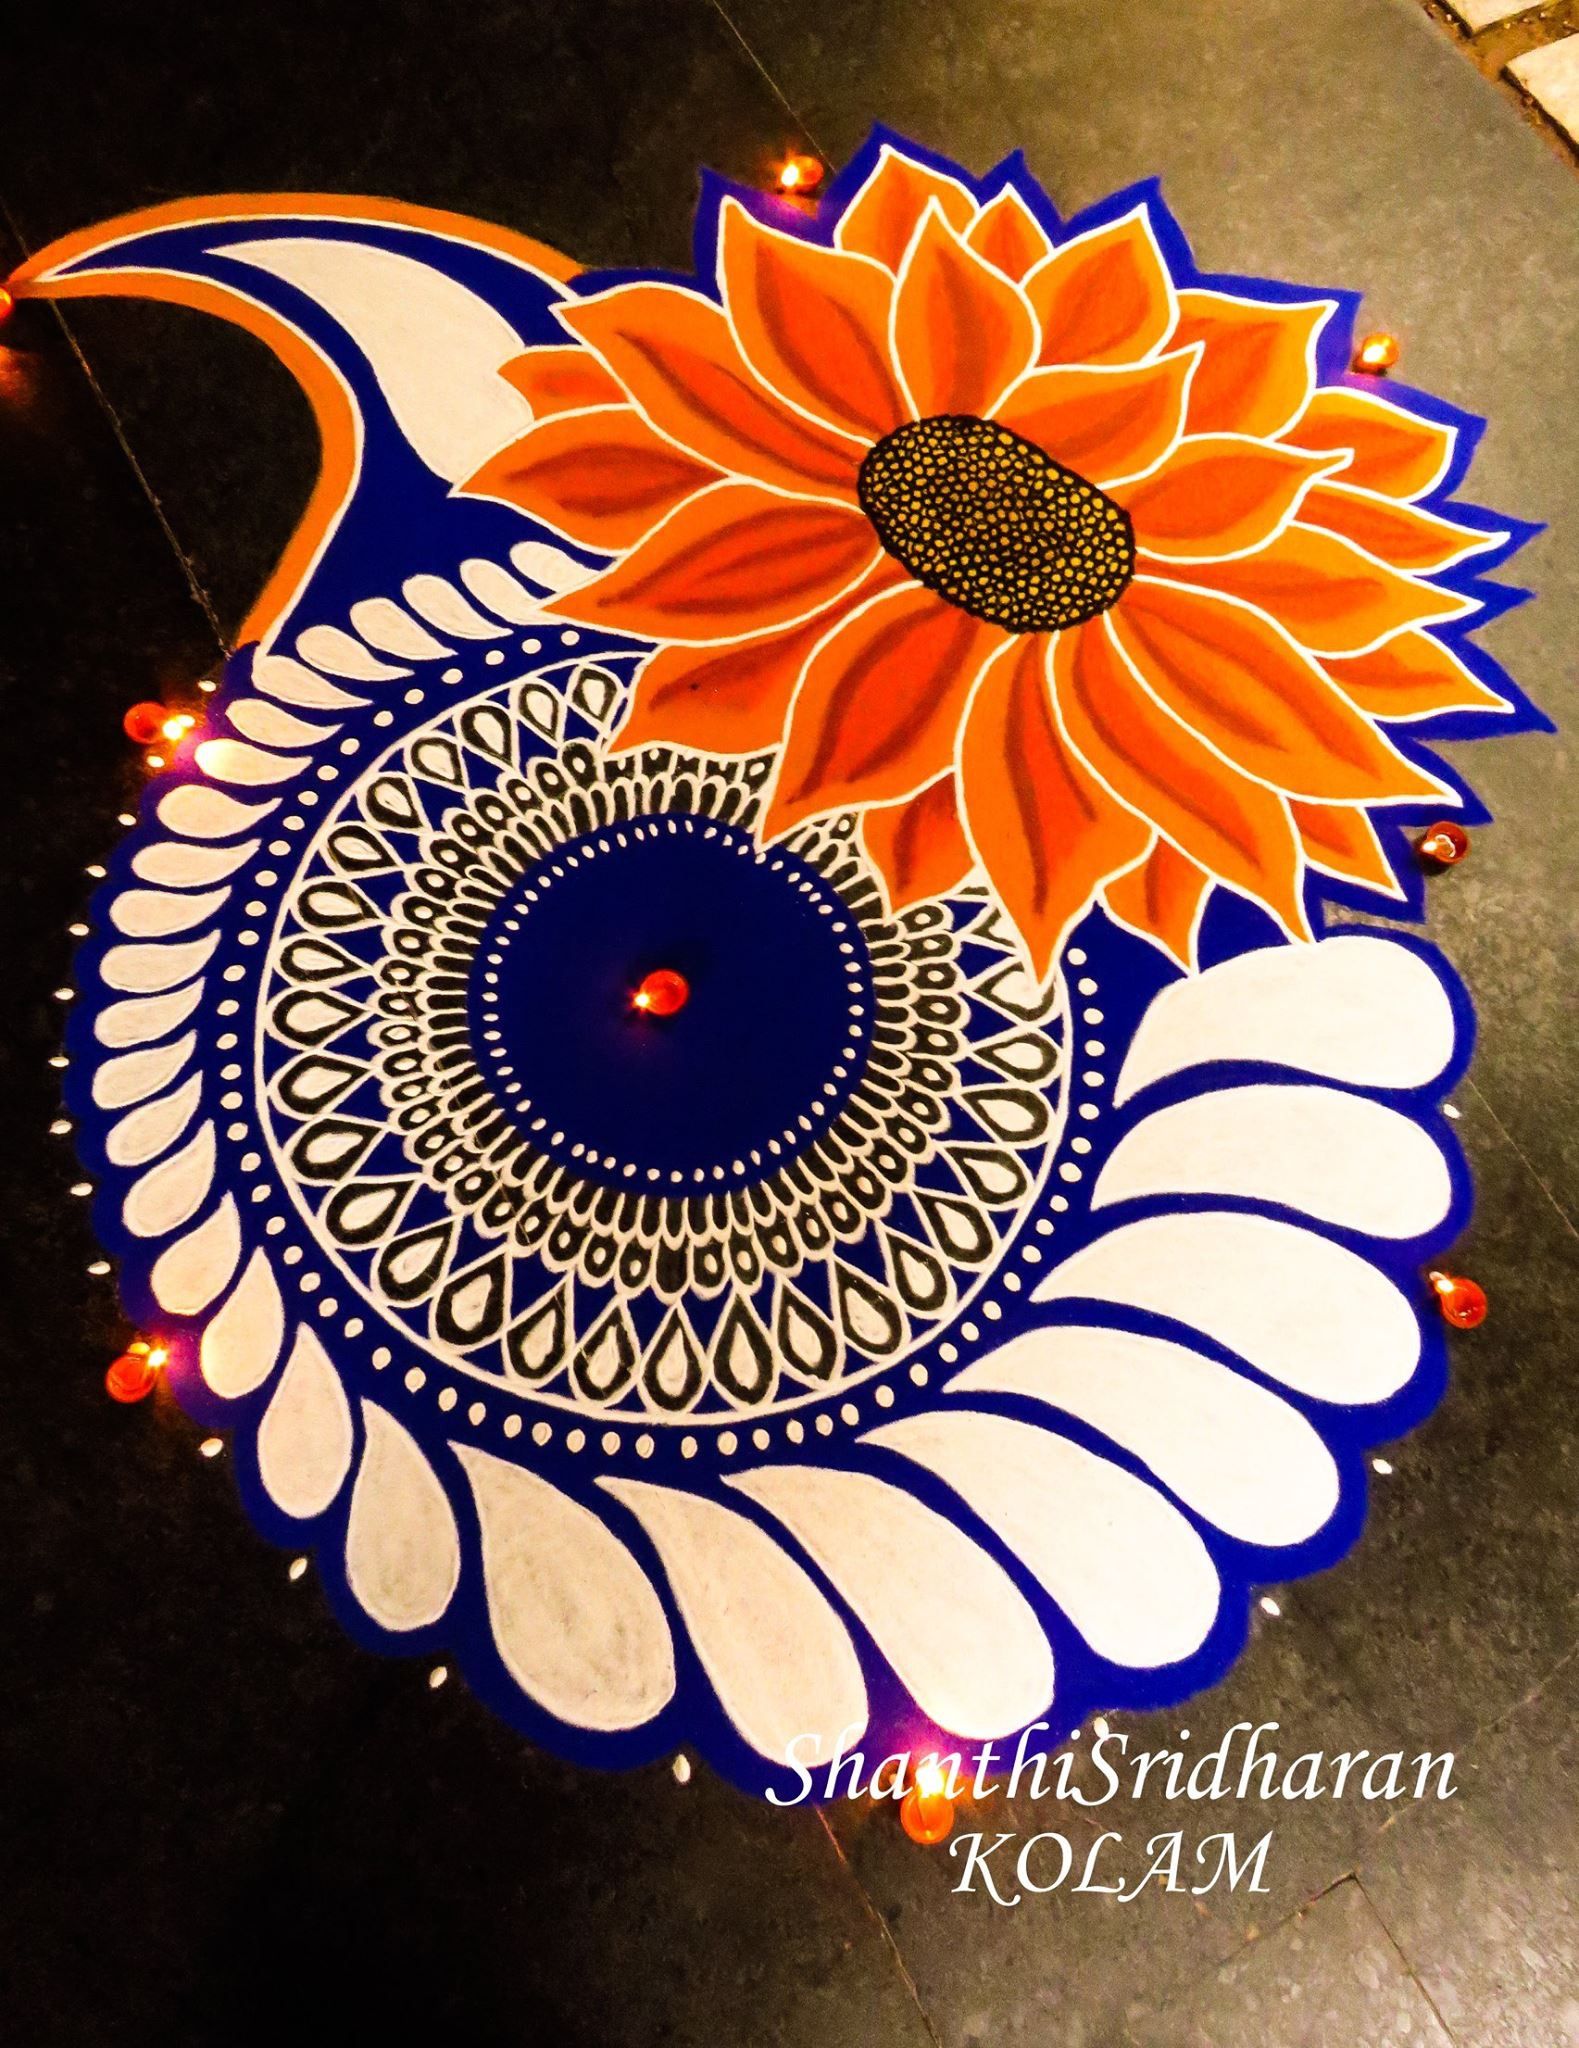 Pin by charmi oswal on diwali | Pinterest | Rangoli designs, Diwali ...